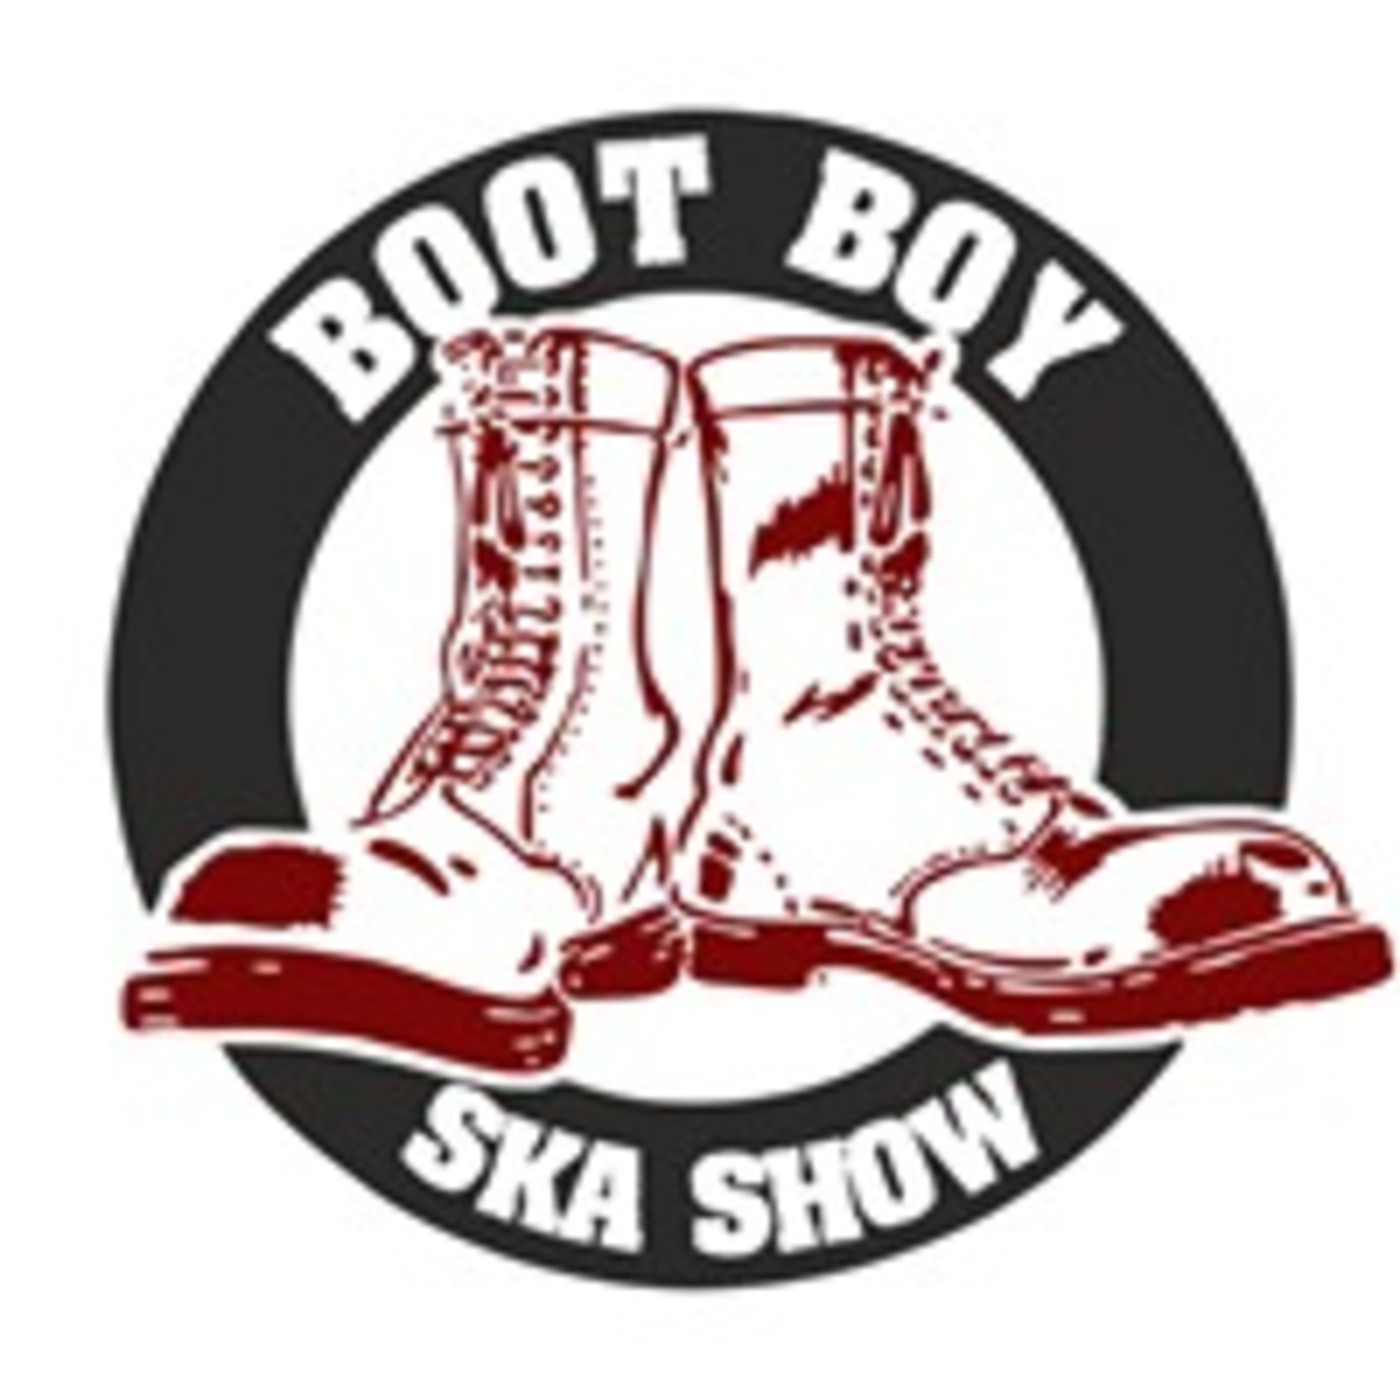 Episode 3035:  The Boot Boy Ska Show With Geoff Longbar 20th Jan 2023 On www.bootboyradio.net